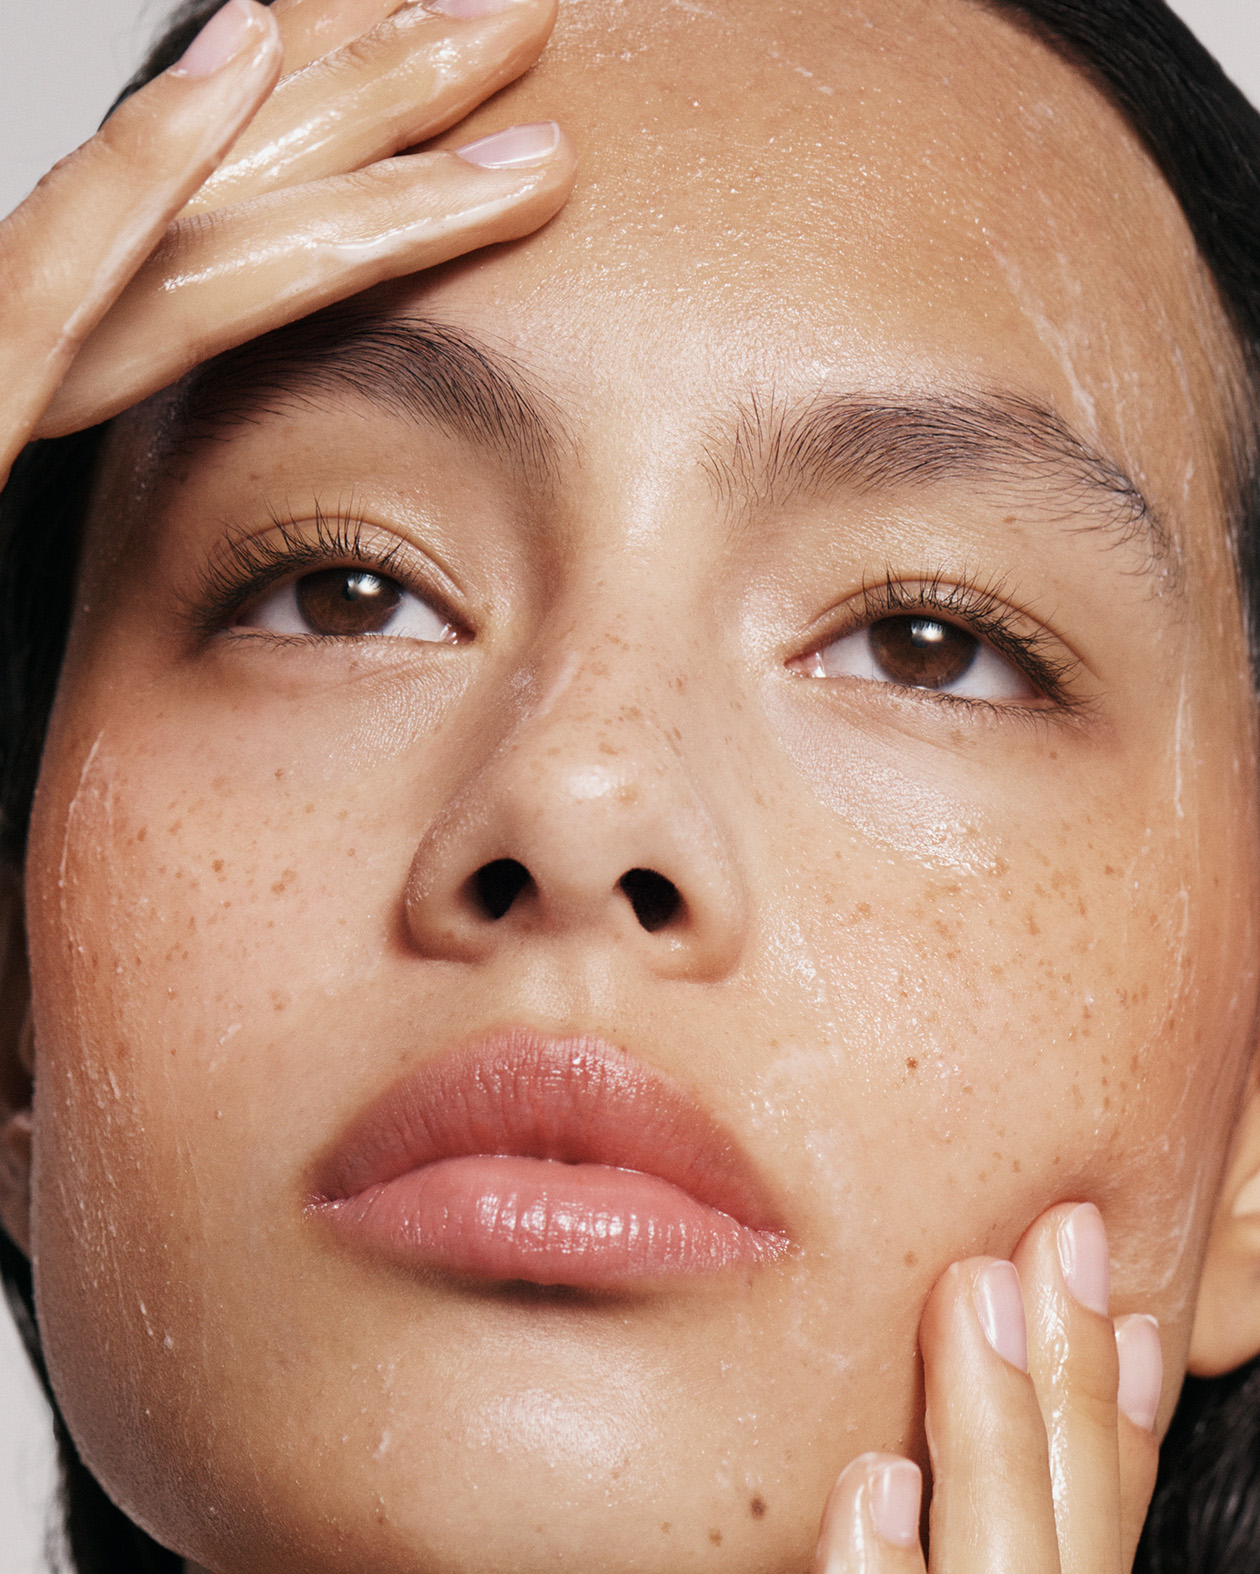 Model applying skincare on clean skin.